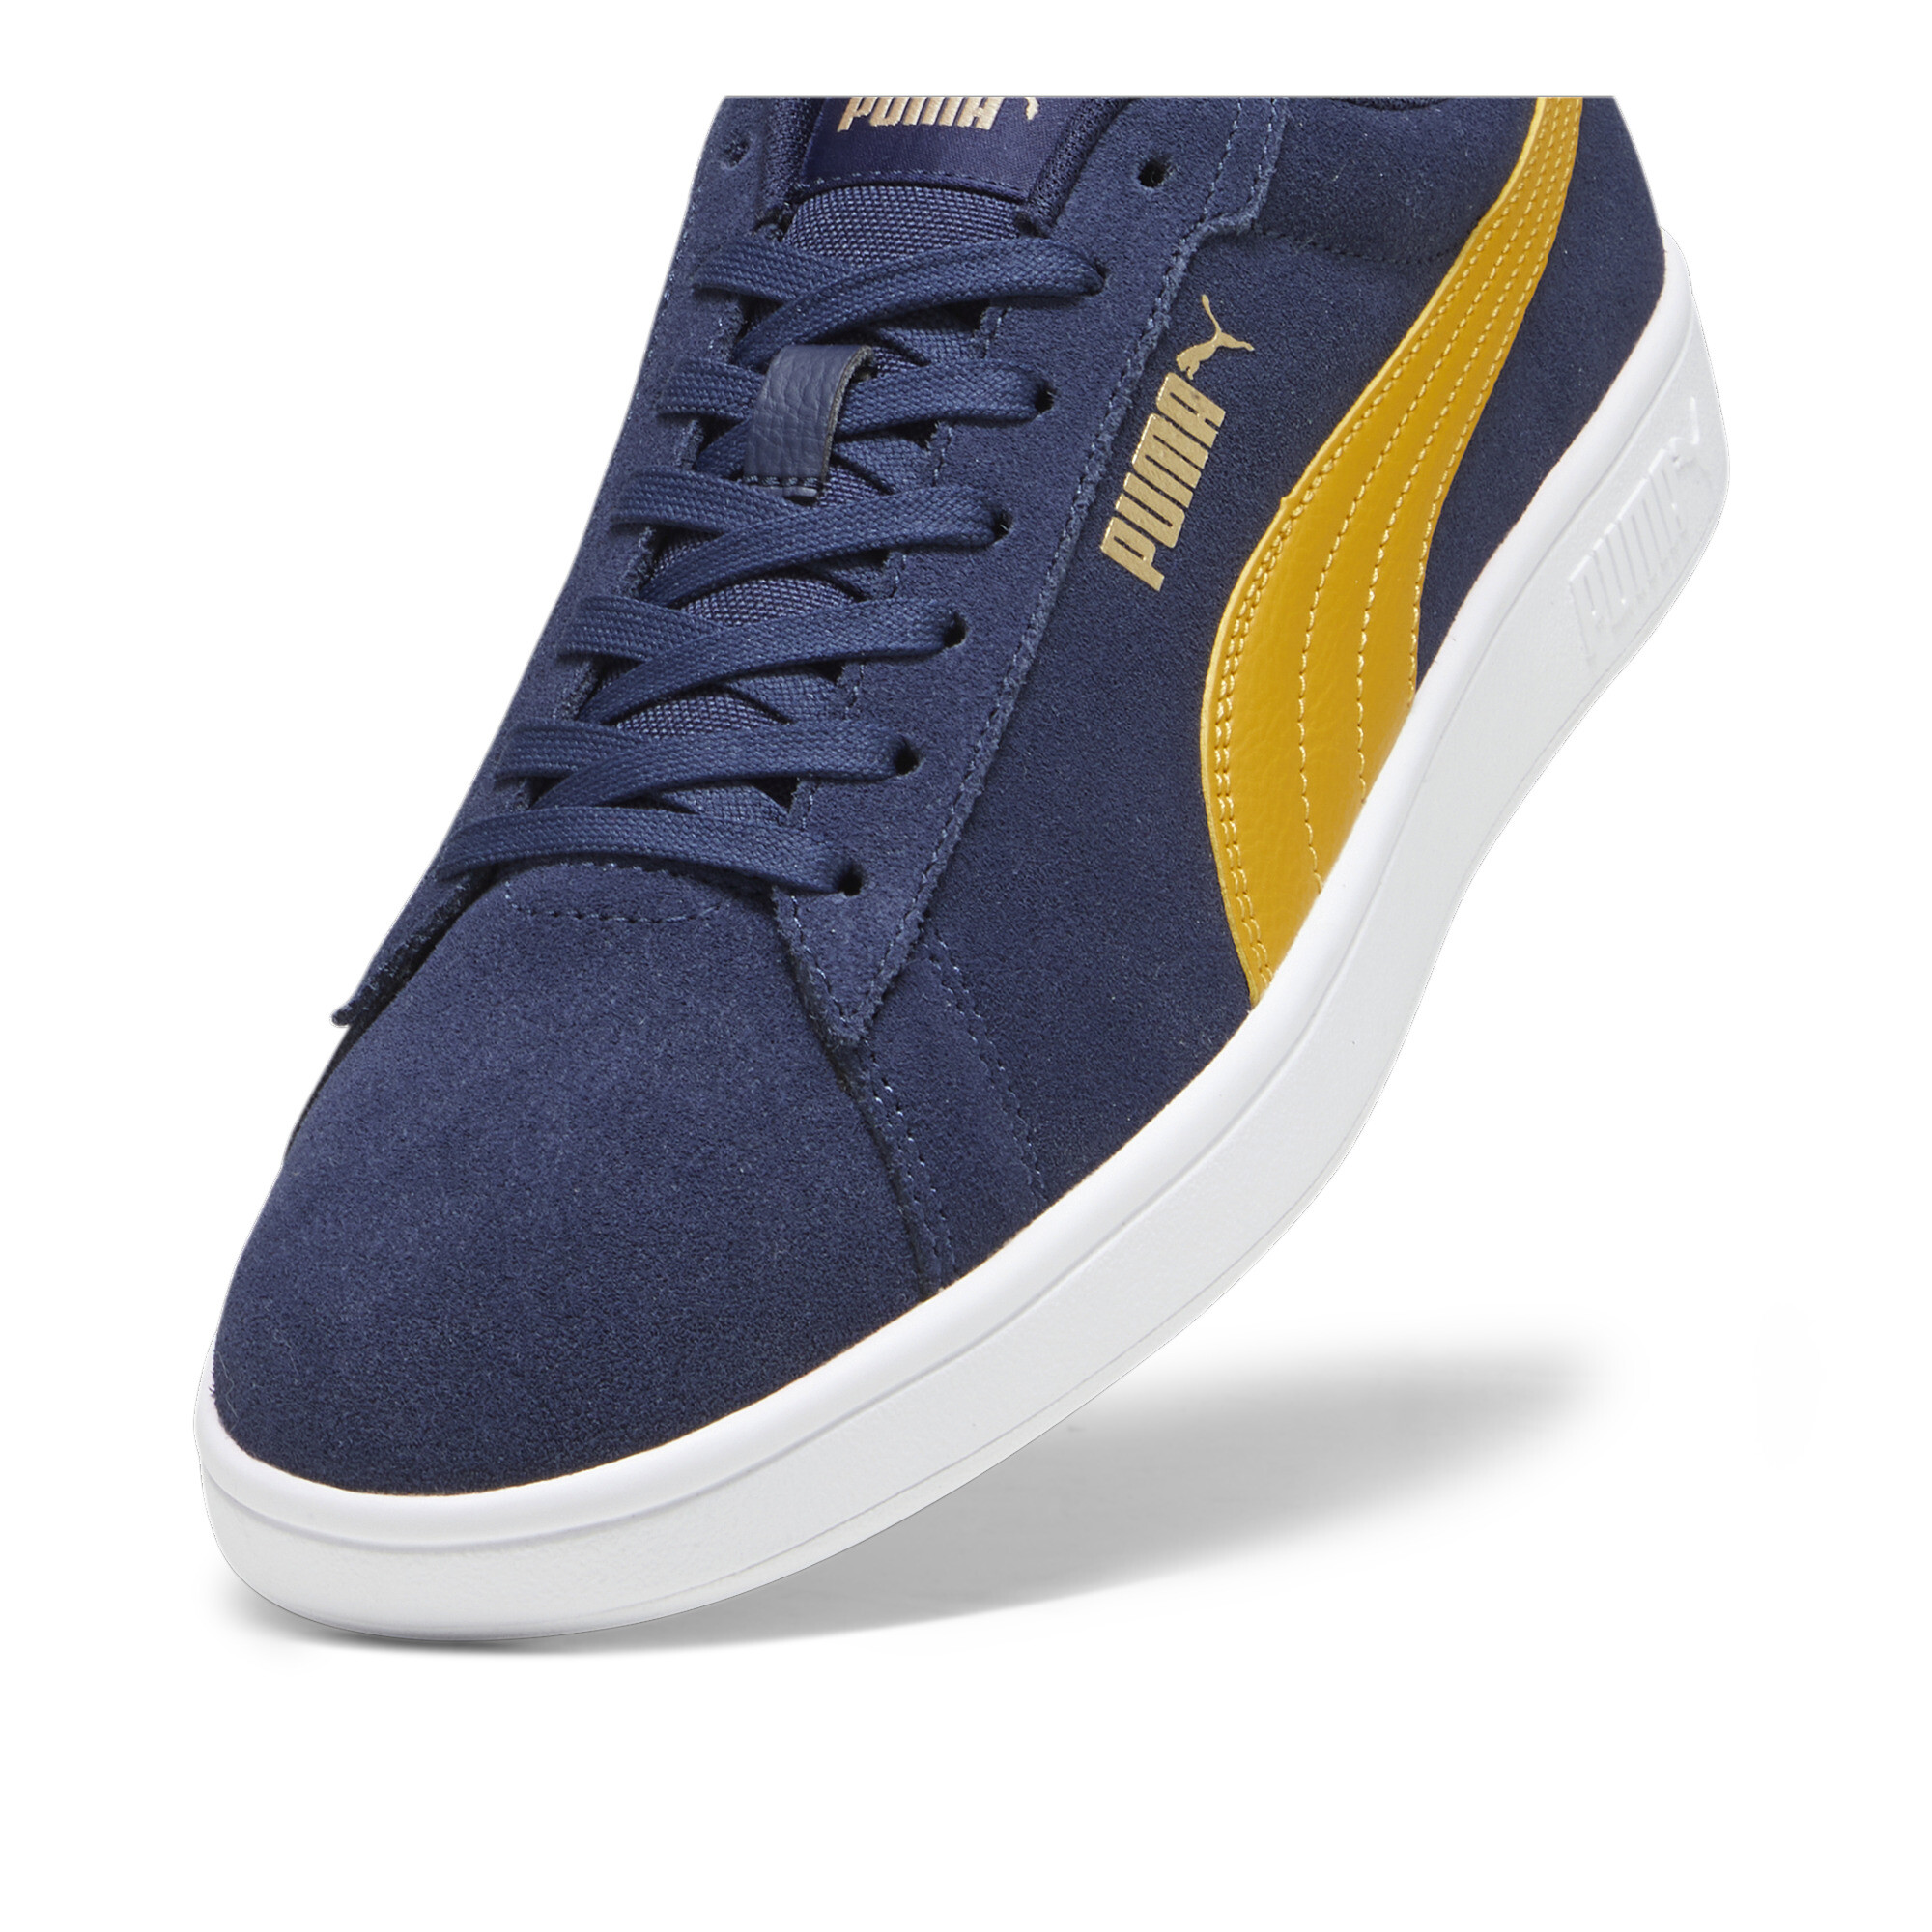 Puma Smash 3.0 Sneakers, Blue, Size 43, Shoes